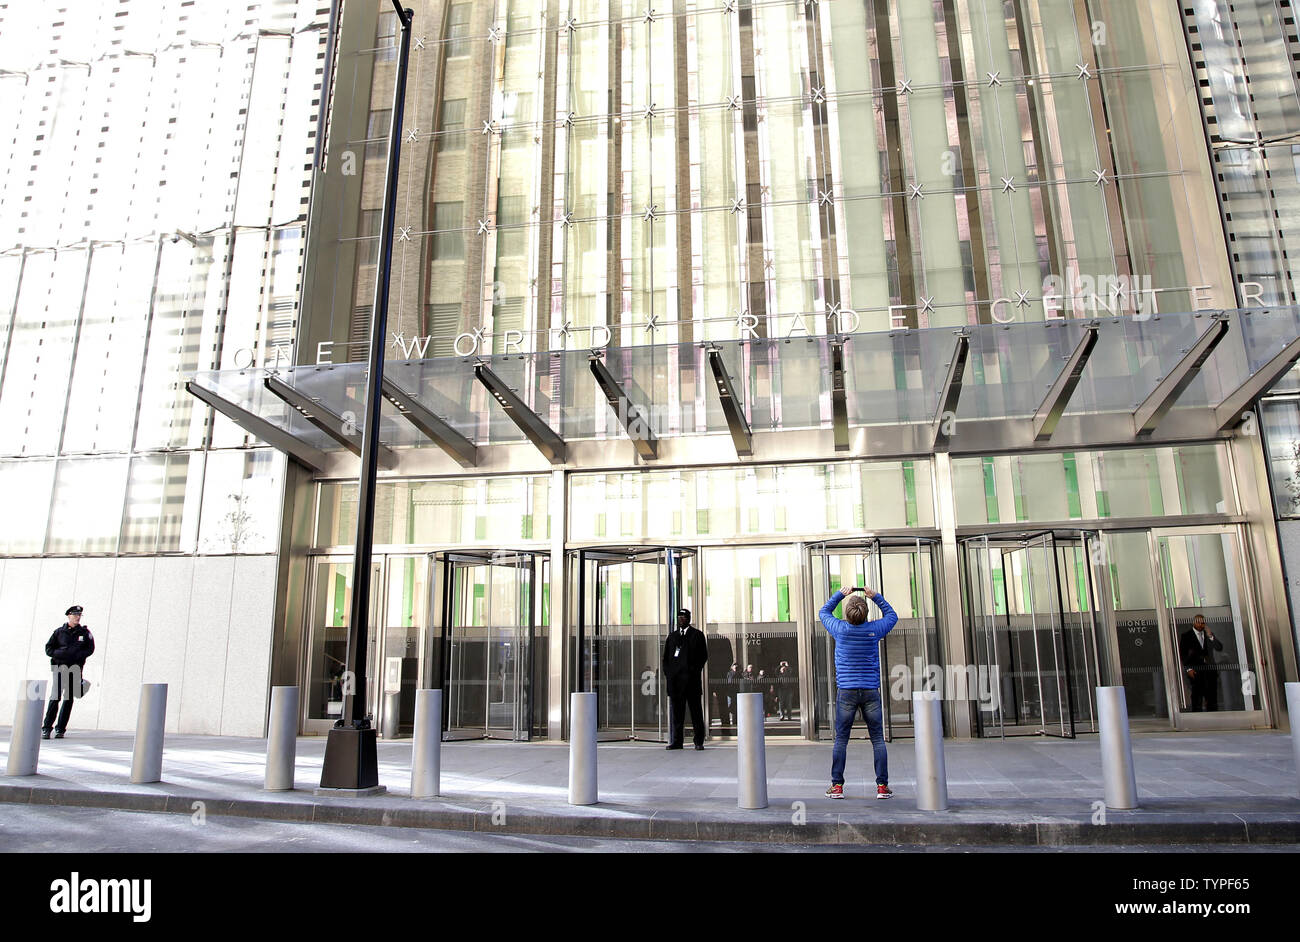 Sicherheit Schutz vor dem Eingang in das One World Trade Center in New York City am 3. November 2014. Dreizehn Jahre nach dem 9/11 Terroranschlag, der auferstandene World Trade Center wurde für Geschäftsreisende eröffnet. Einige von verlagsgiganten Conde Nast's Mitarbeiter begann das One World Trade Center auf Heute zu arbeiten. UPI/John angelillo Stockfoto